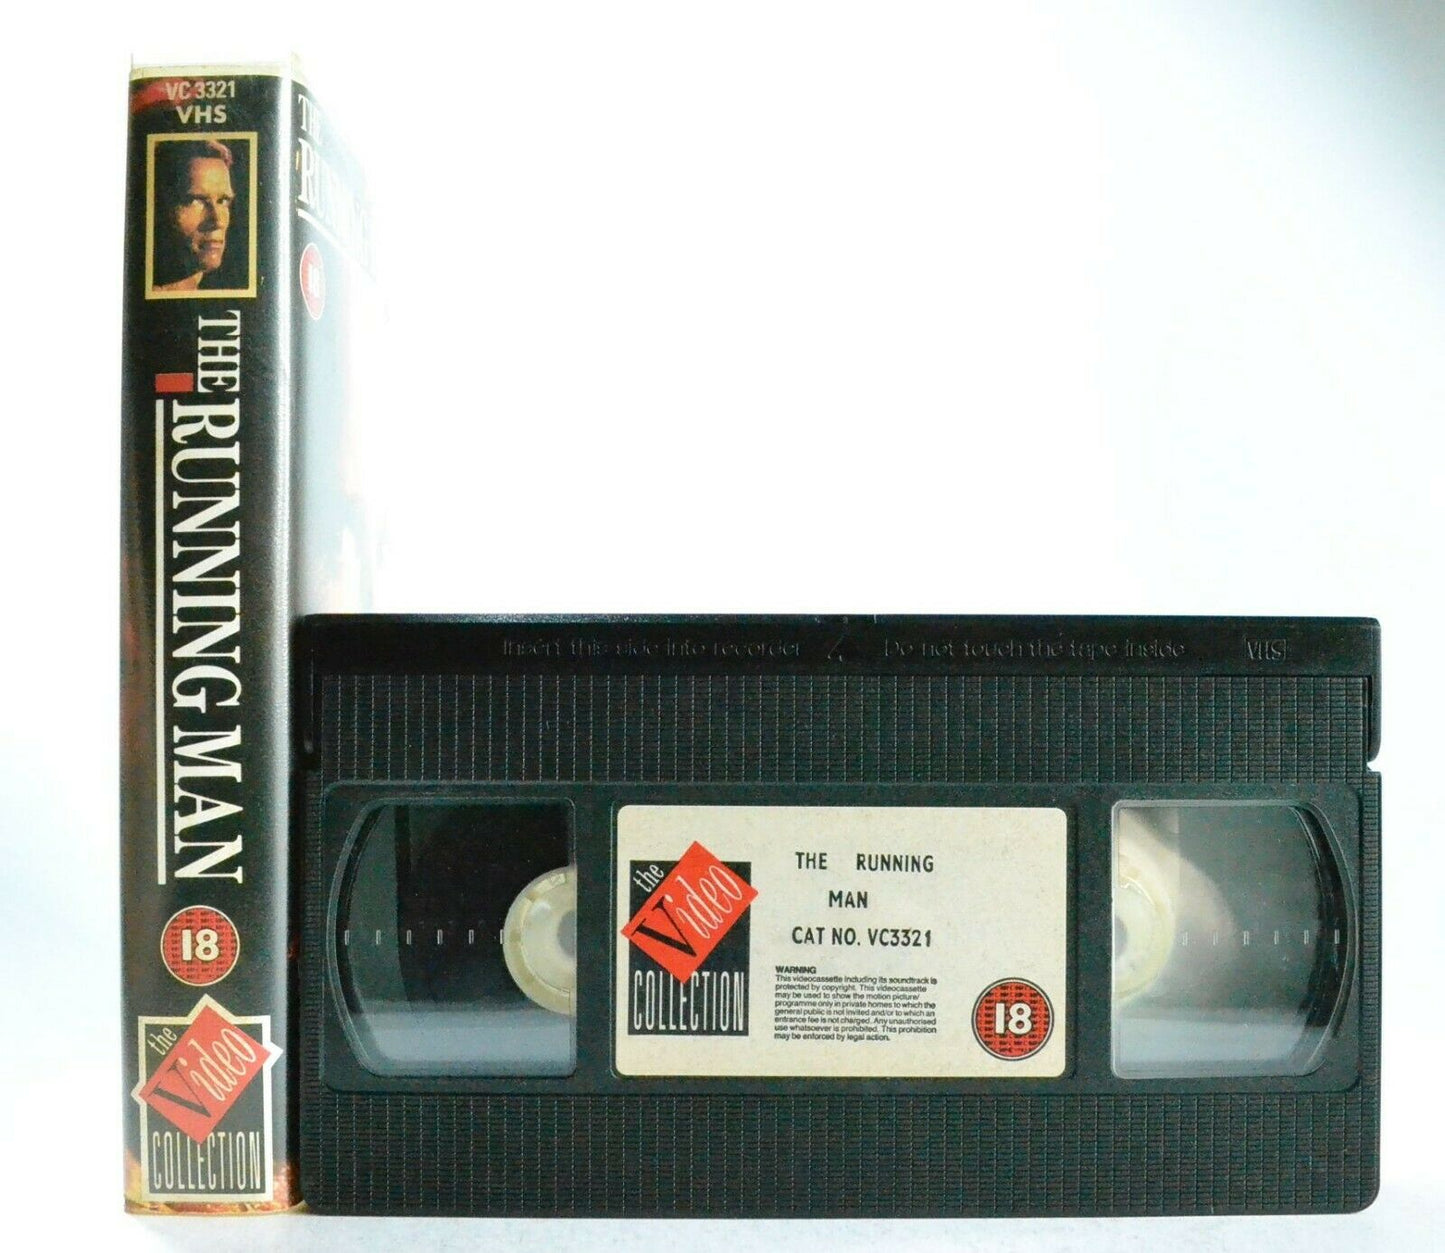 The Running Man: Based On S.King Novel - Sci-Fi Action - A.Schwarzenegger - VHS-